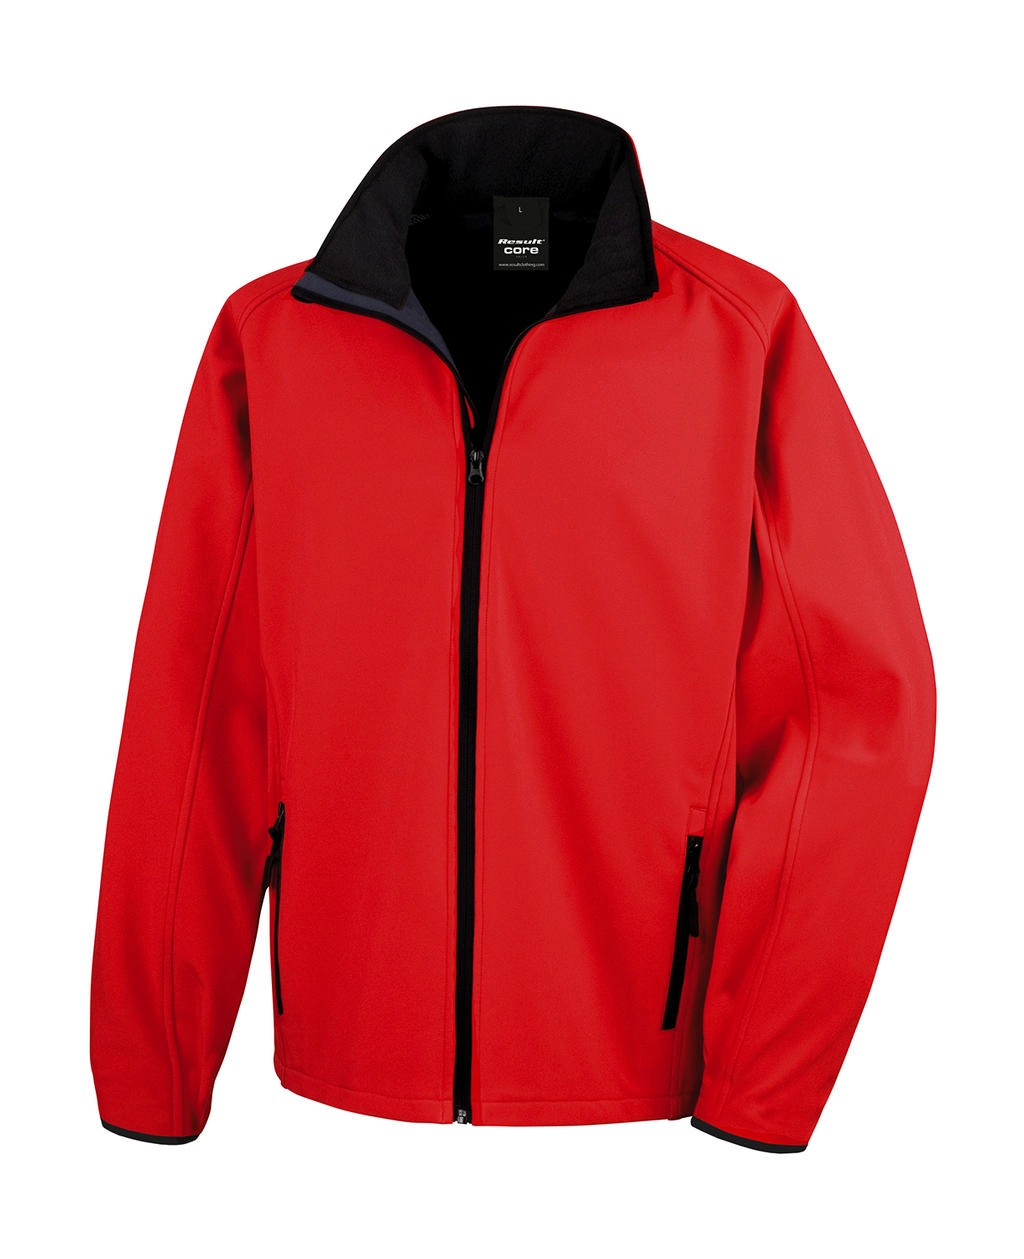 Printable Softshell Jacket zum Besticken und Bedrucken in der Farbe Red/Black mit Ihren Logo, Schriftzug oder Motiv.